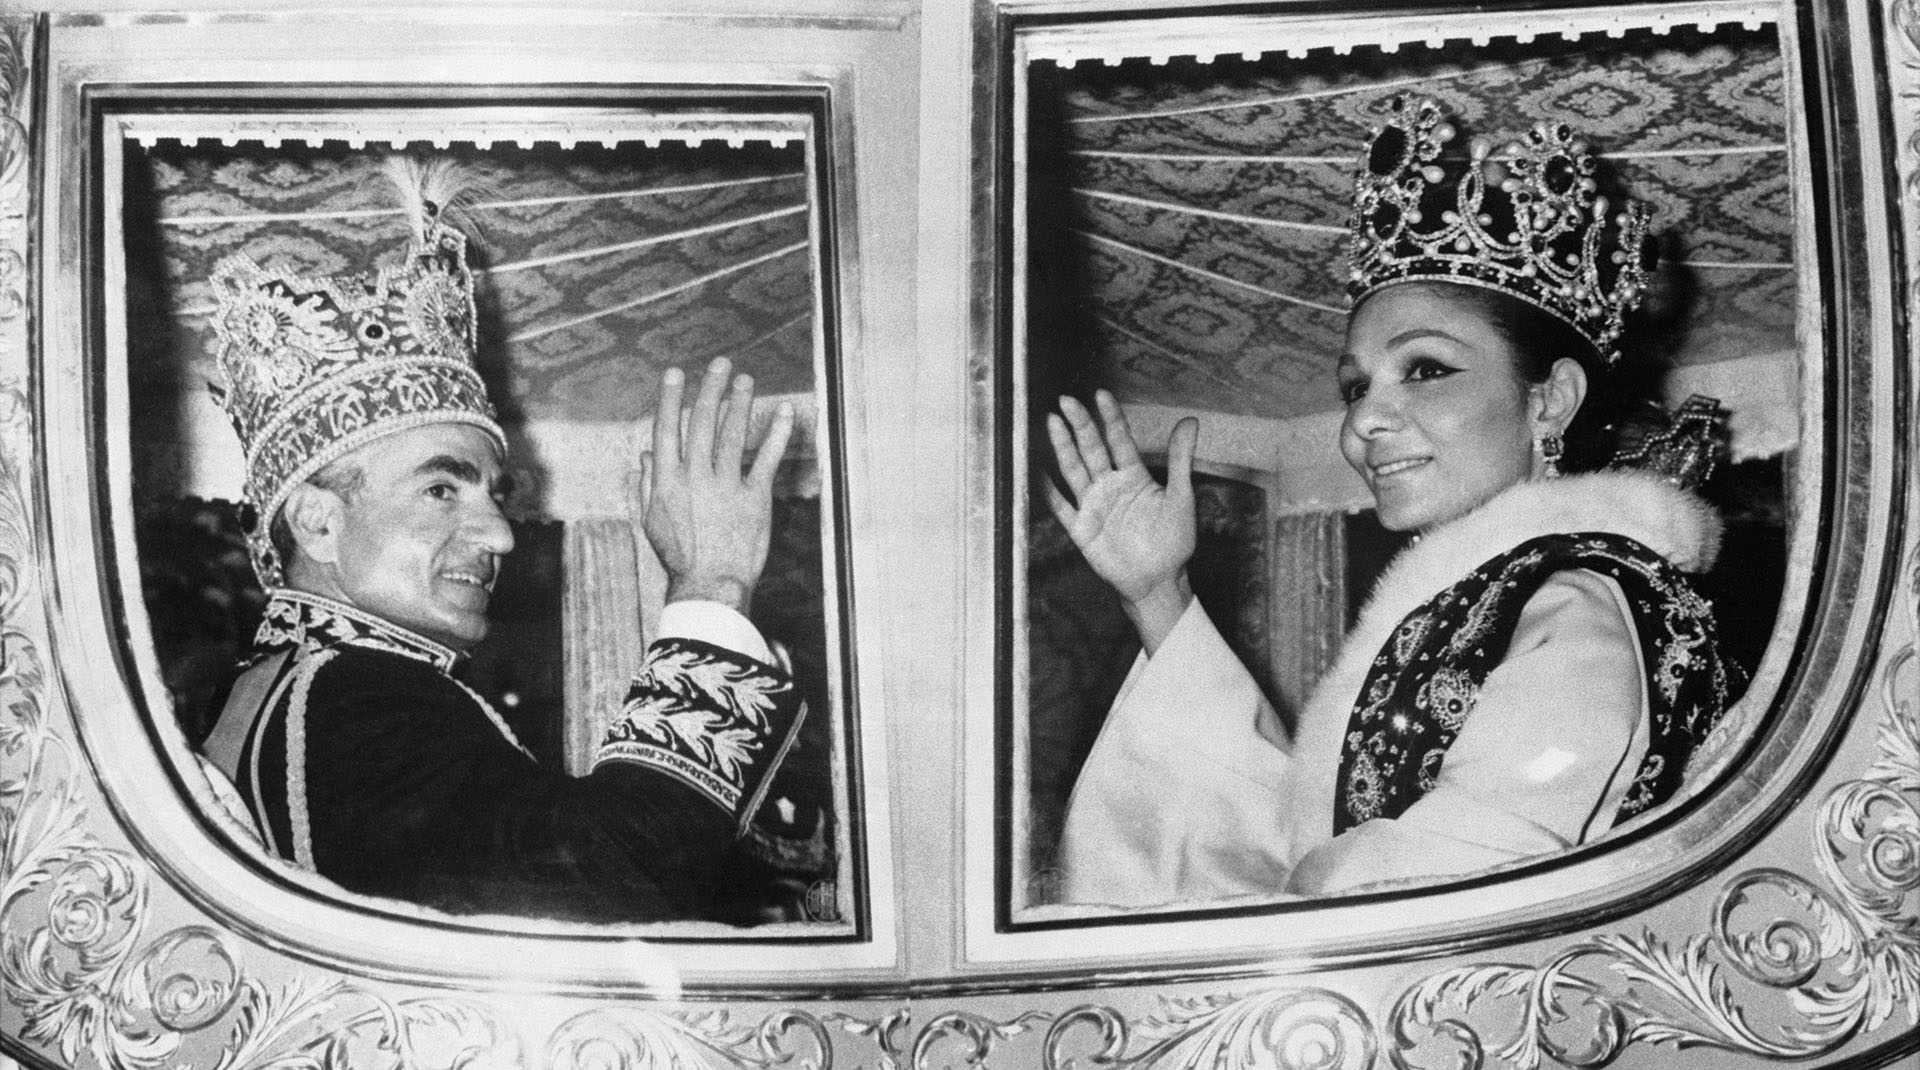 La corona imperial del sha tenía 3380 piedras preciosas y la de Farah era de platino con diamantes y piedras preciosas. Luego de la coronación saludan al pueblo iraní desde la carroza real (Bettmann Archive)